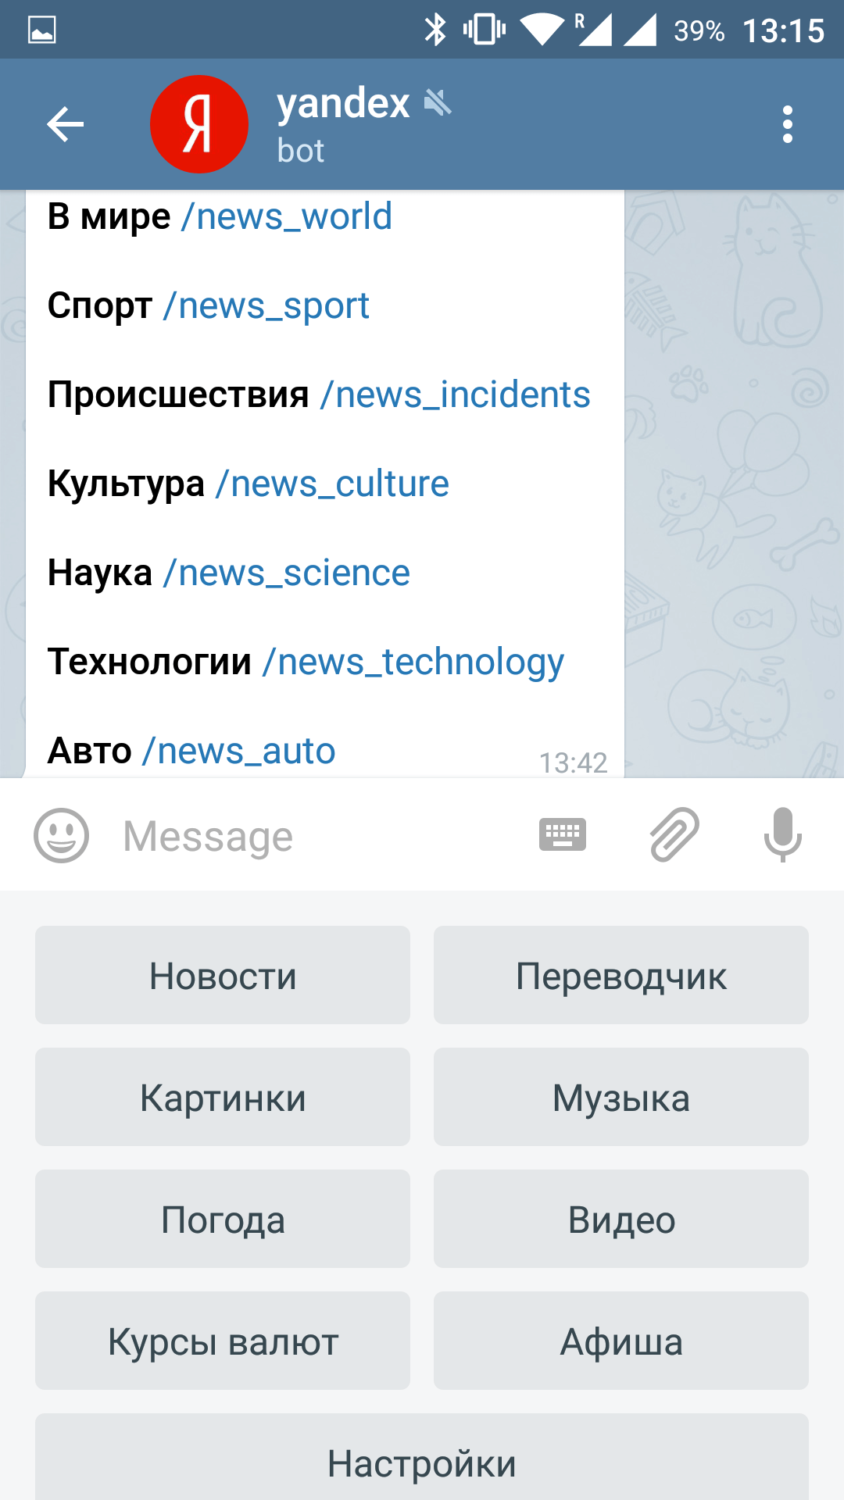 Топ 5 ботов для Telegram. Яндекс.Бот. Фото.